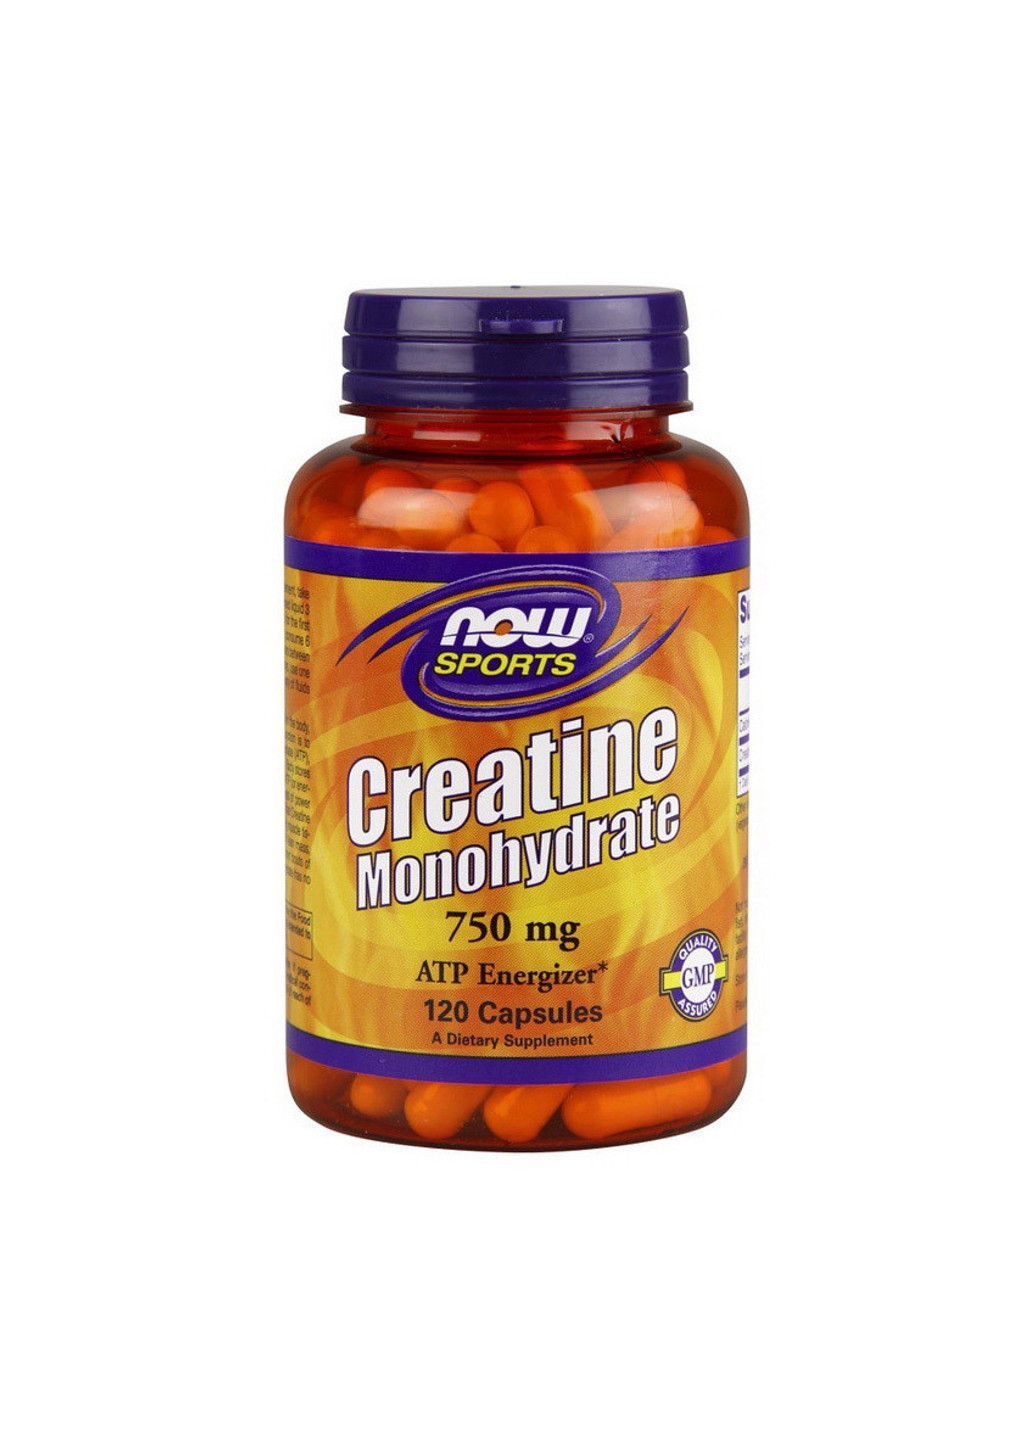 Креатин моногідрат Creatine Monohydrate 750 mg (120 капс) нау фудс Now Foods (255279530)